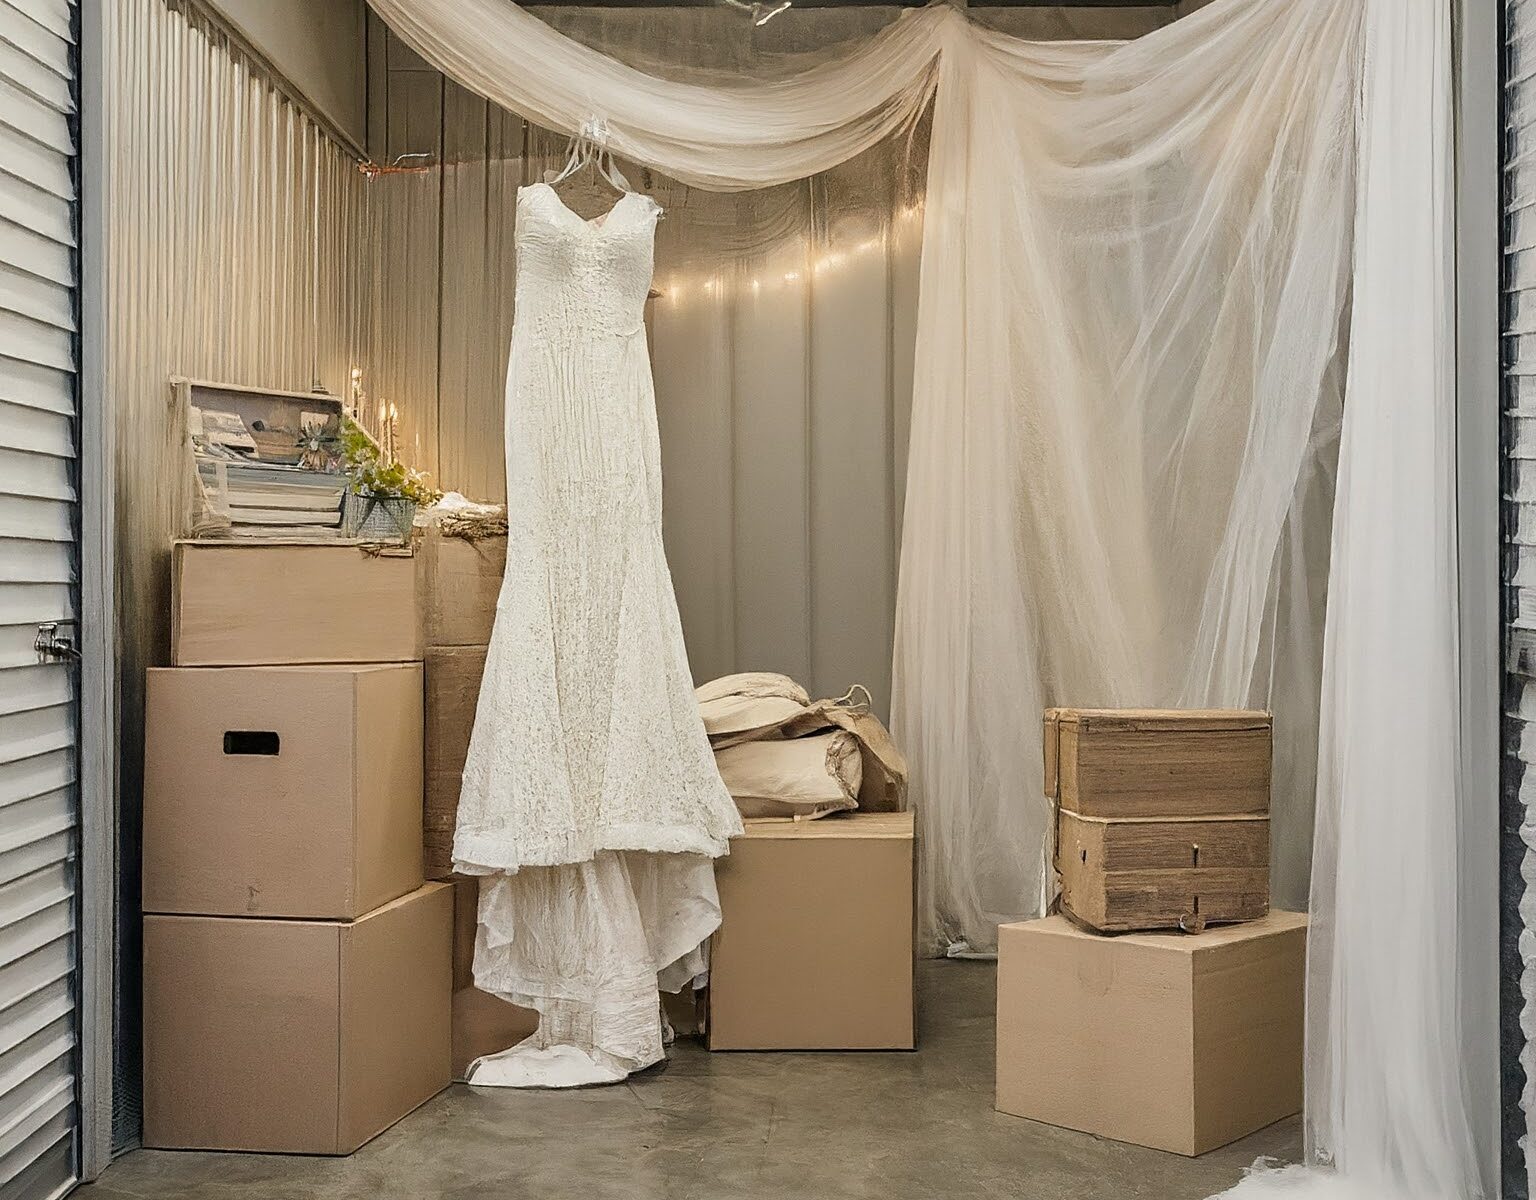 Wedding items in a self storage unit